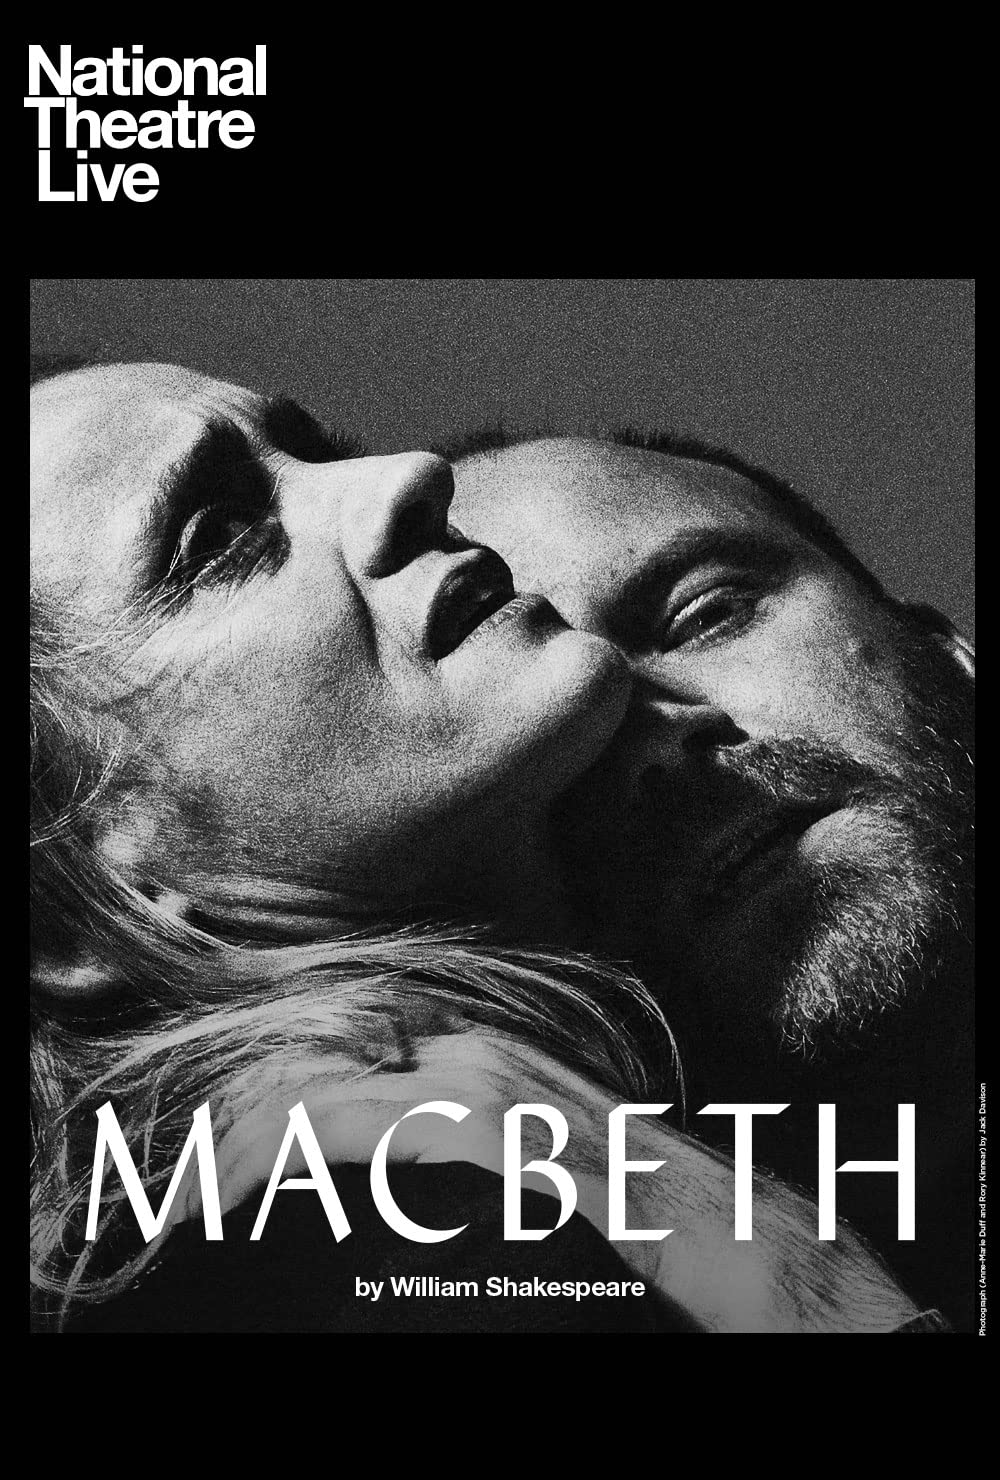 Filmbeschreibung zu National Theatre London: Macbeth